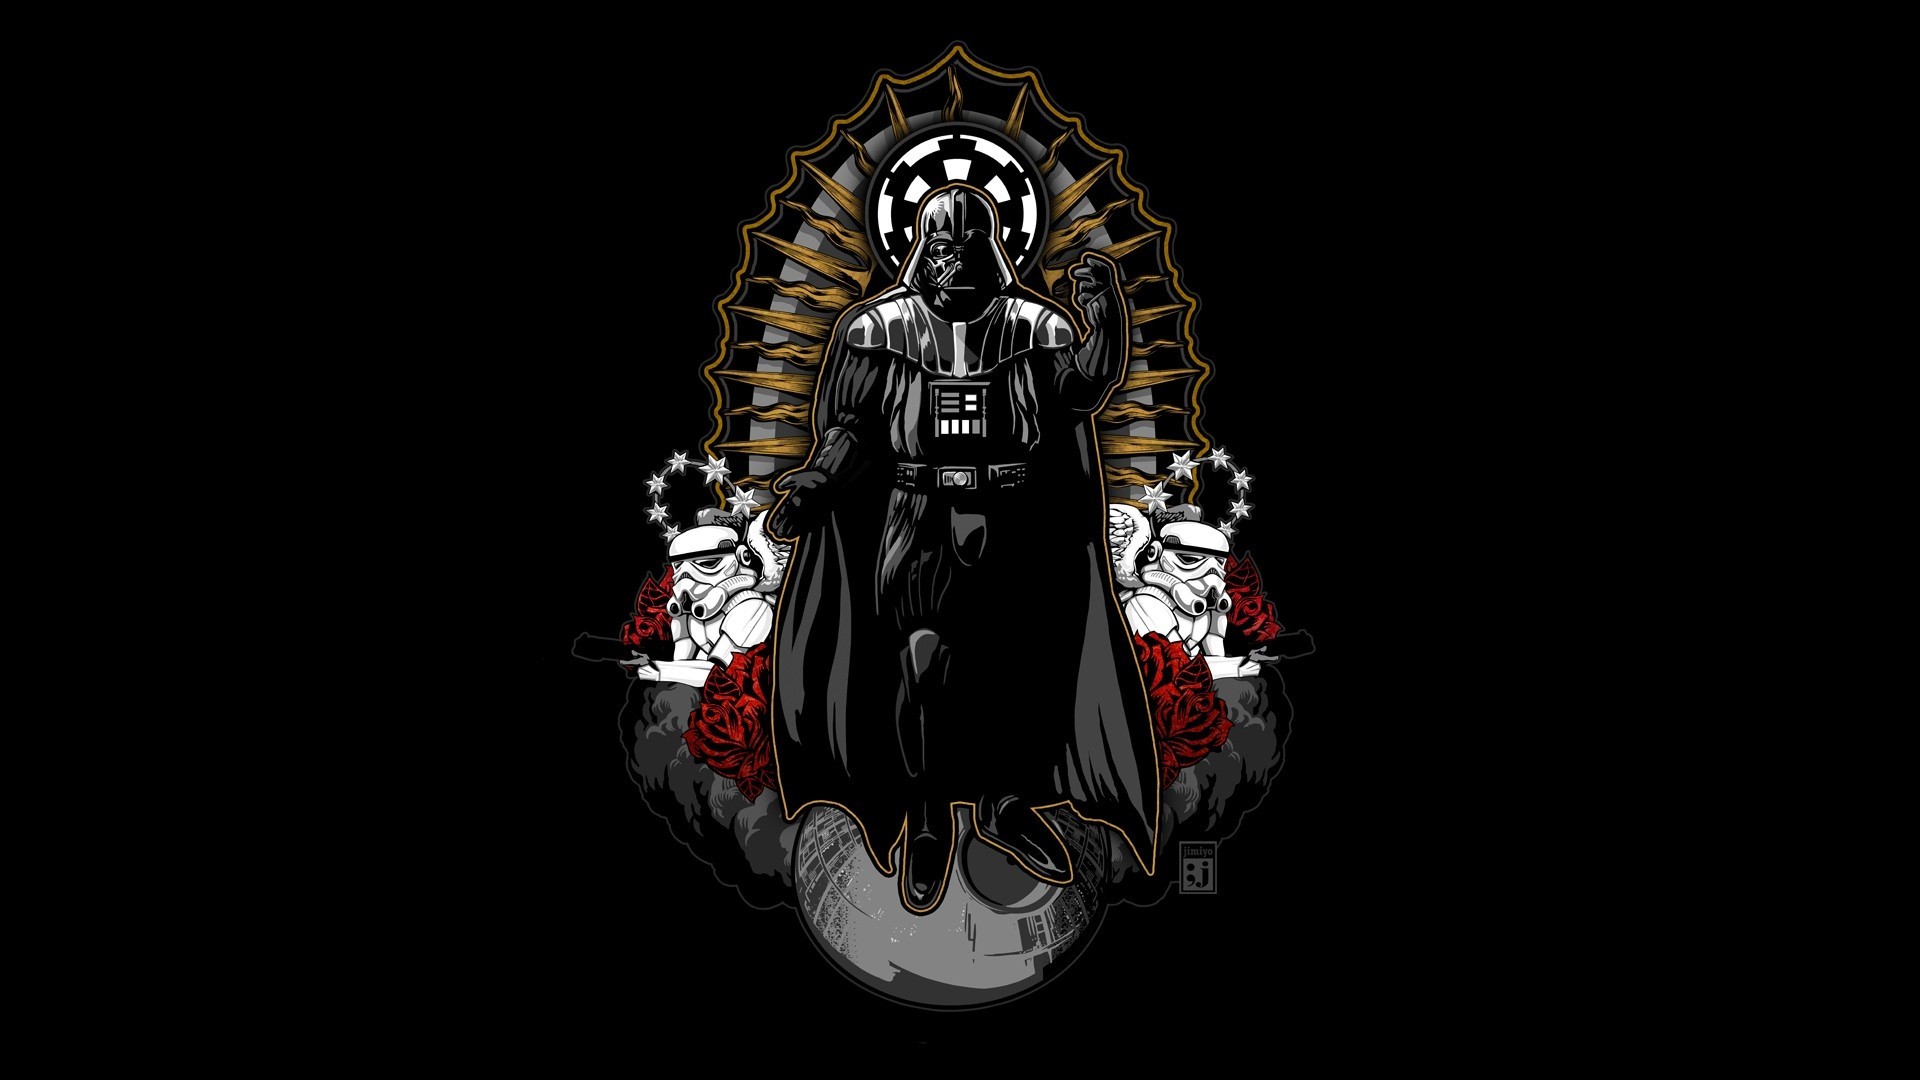 Sci Fi – Star Wars Darth Vader Stormtrooper Wallpaper